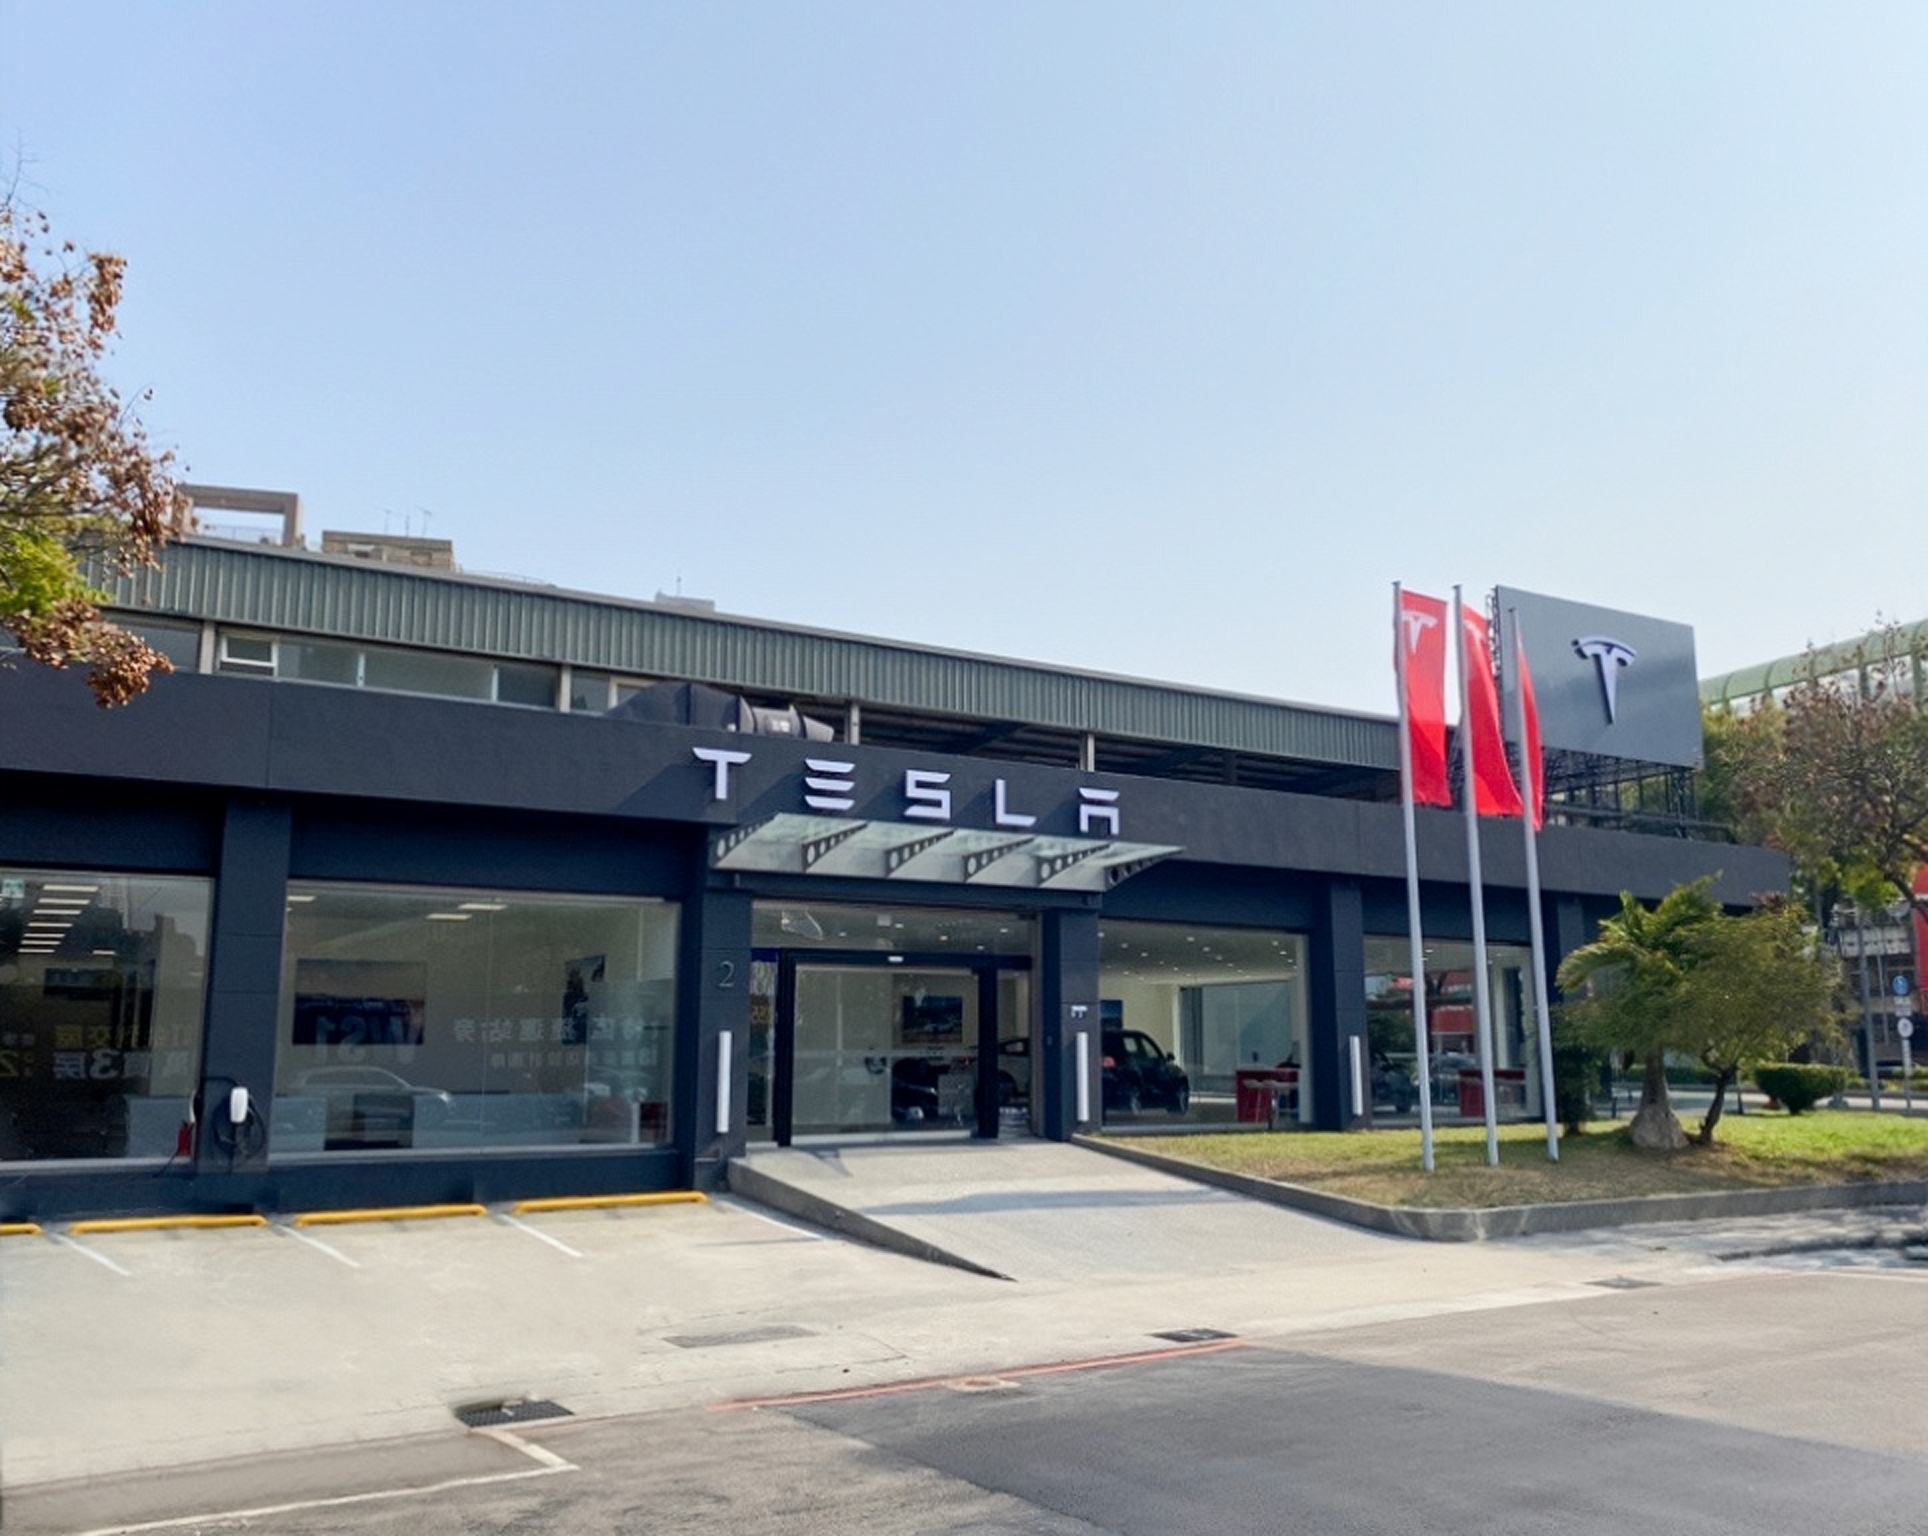 Tesla Center 台中青海服務體驗中心將提供中部消費者與車主從銷售、體驗到保養維修的全方位服務.png